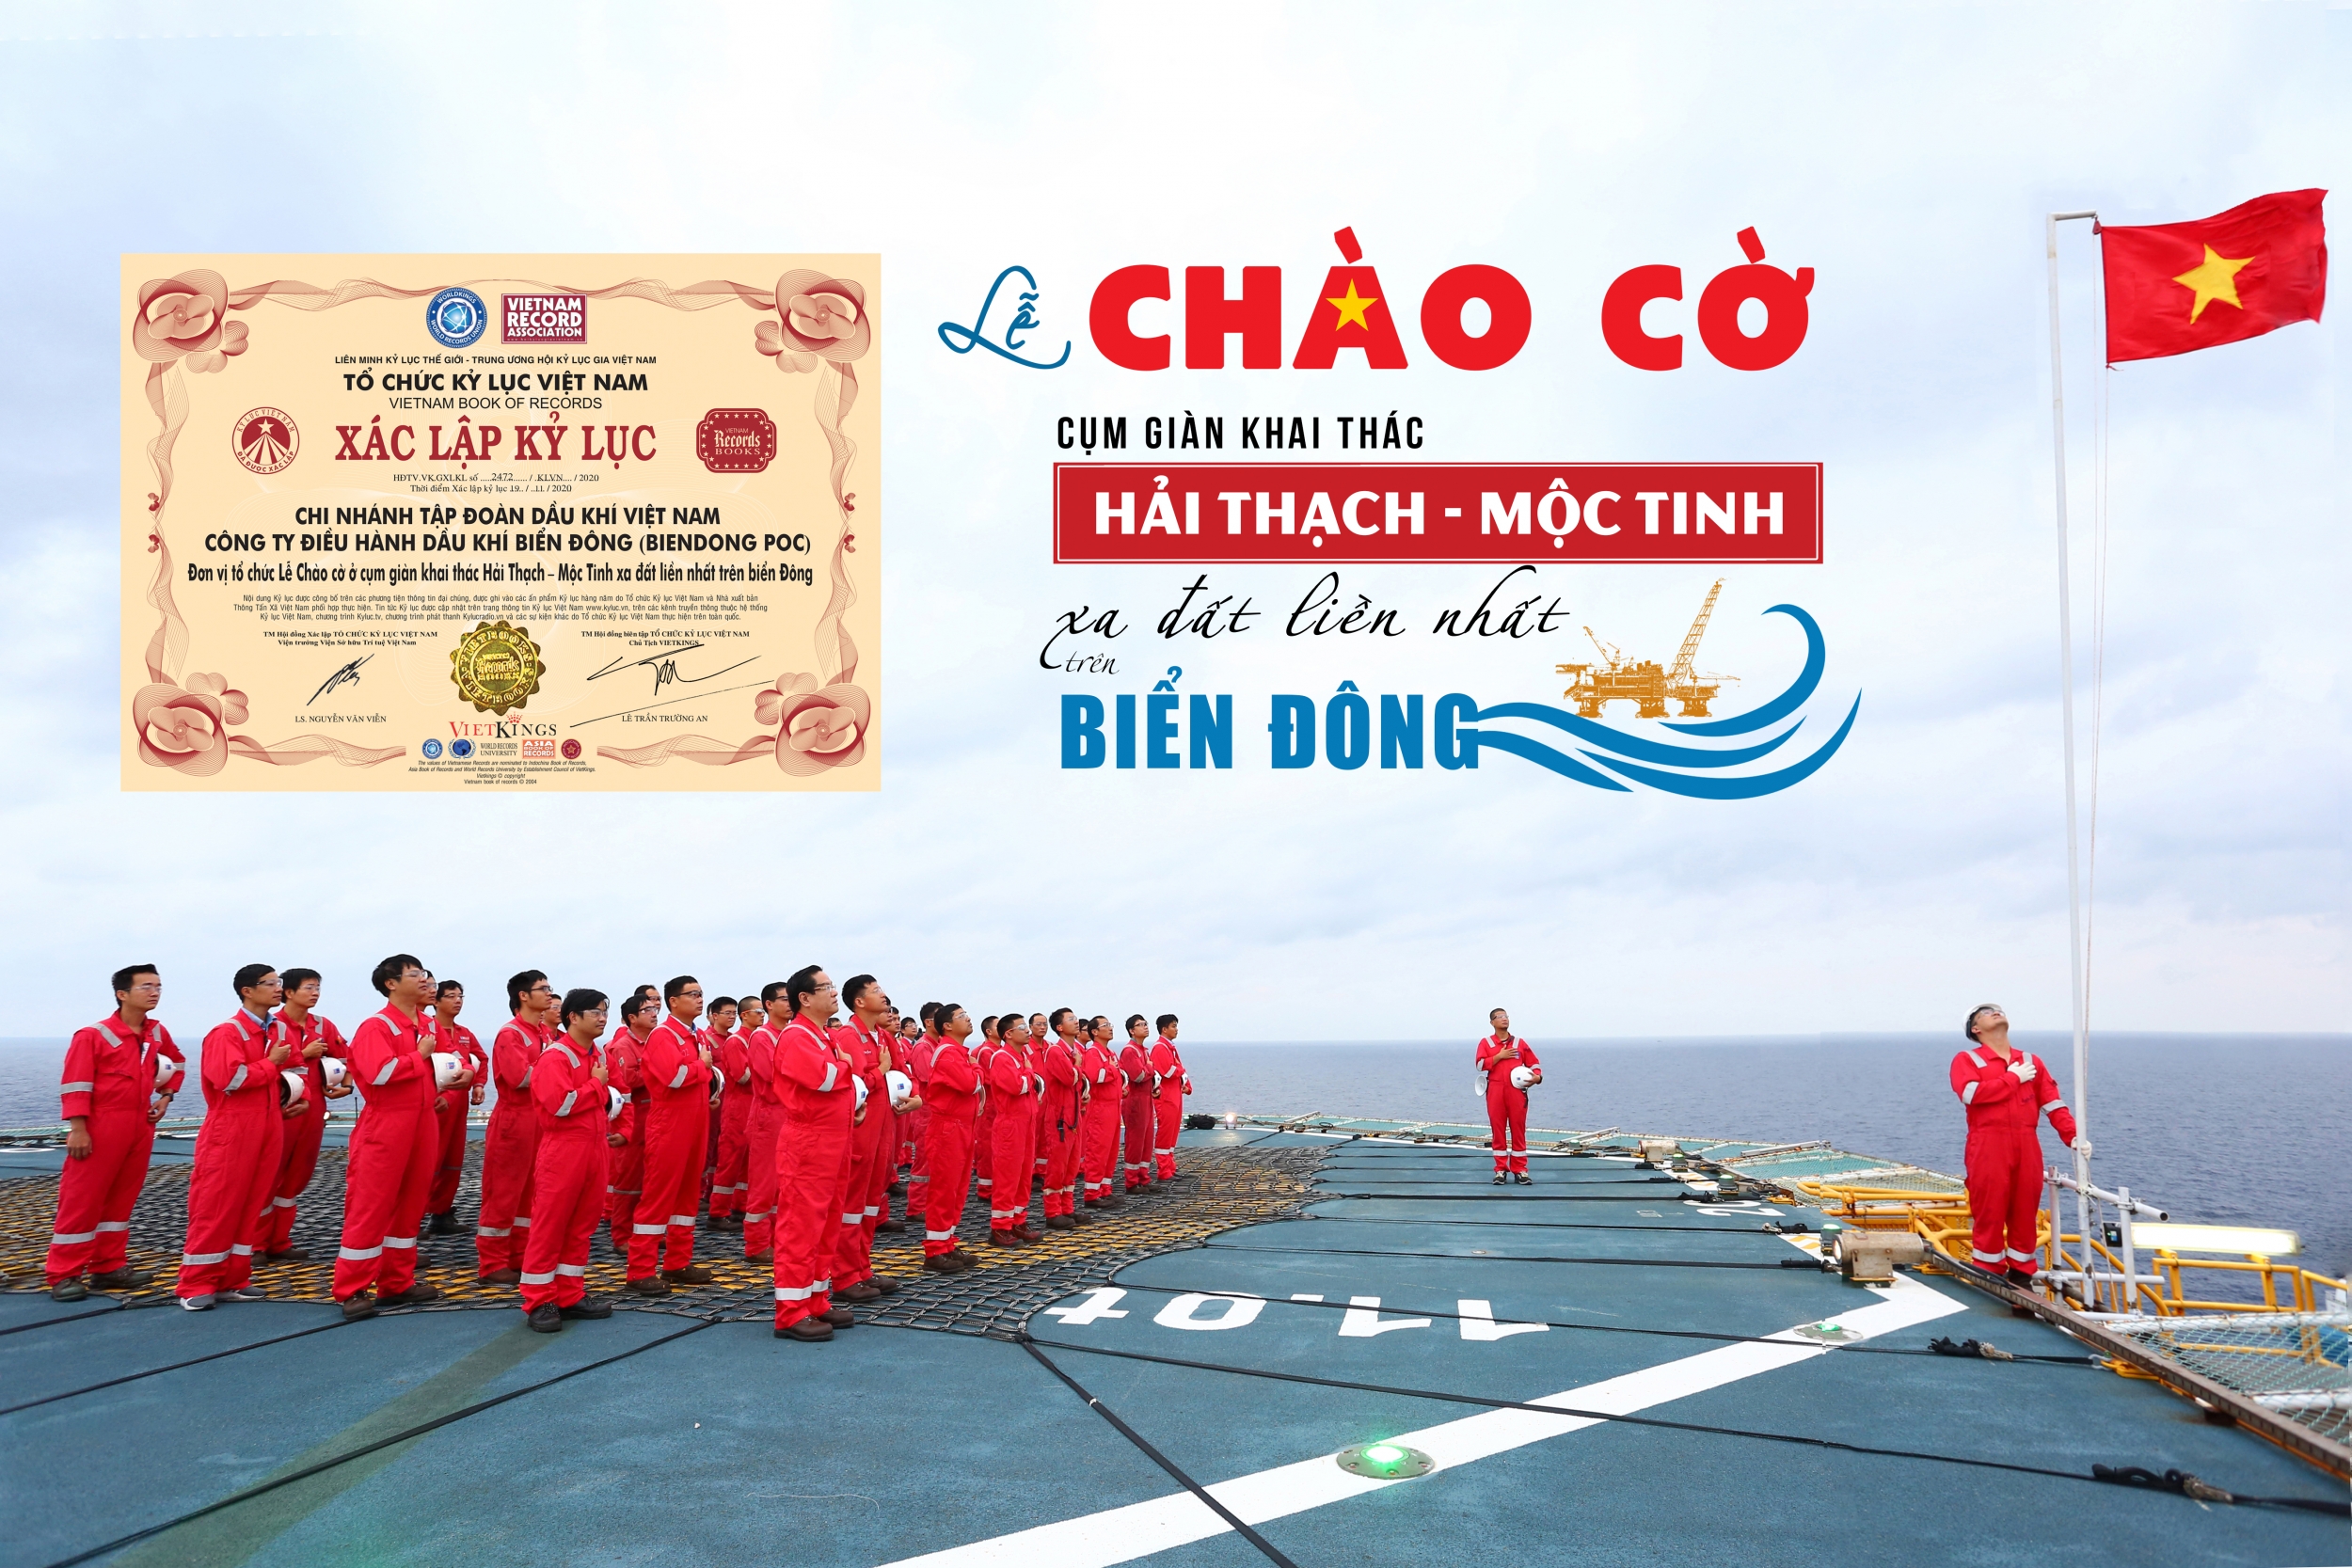 BIENDONG POC nhận Kỷ lục Việt Nam “Đơn vị tổ chức lễ Chào cờ ở cụm giàn khai thác Hải Thạch - Mộc Tinh xa đất liền nhất trên Biển Đông”